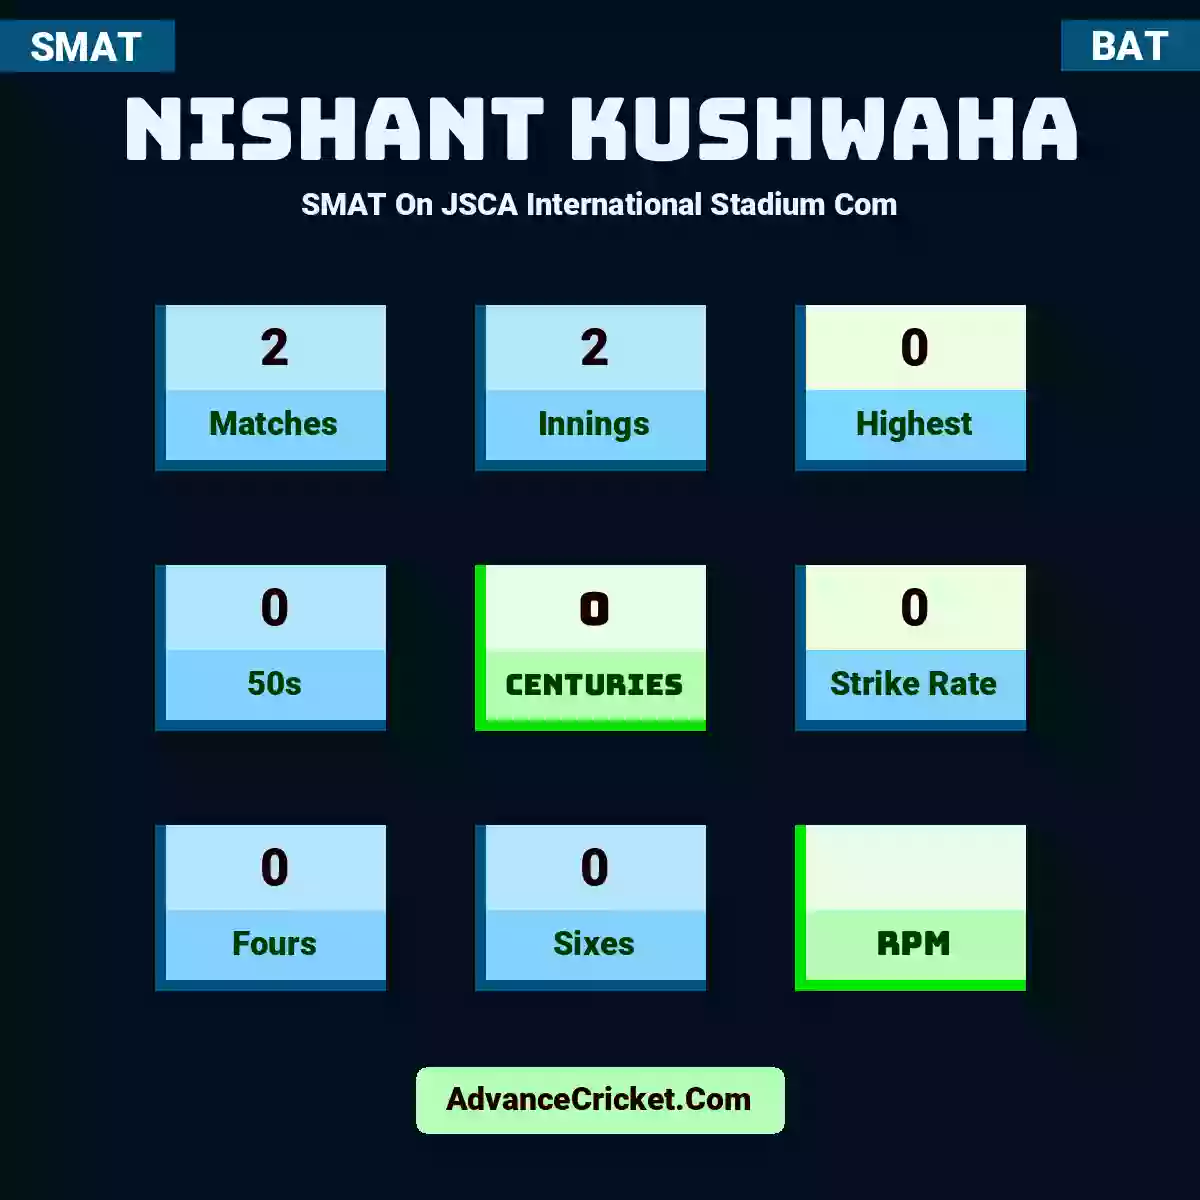 Nishant Kushwaha SMAT  On JSCA International Stadium Com, Nishant Kushwaha played 2 matches, scored 0 runs as highest, 0 half-centuries, and 0 centuries, with a strike rate of 0. N.Kushwaha hit 0 fours and 0 sixes.